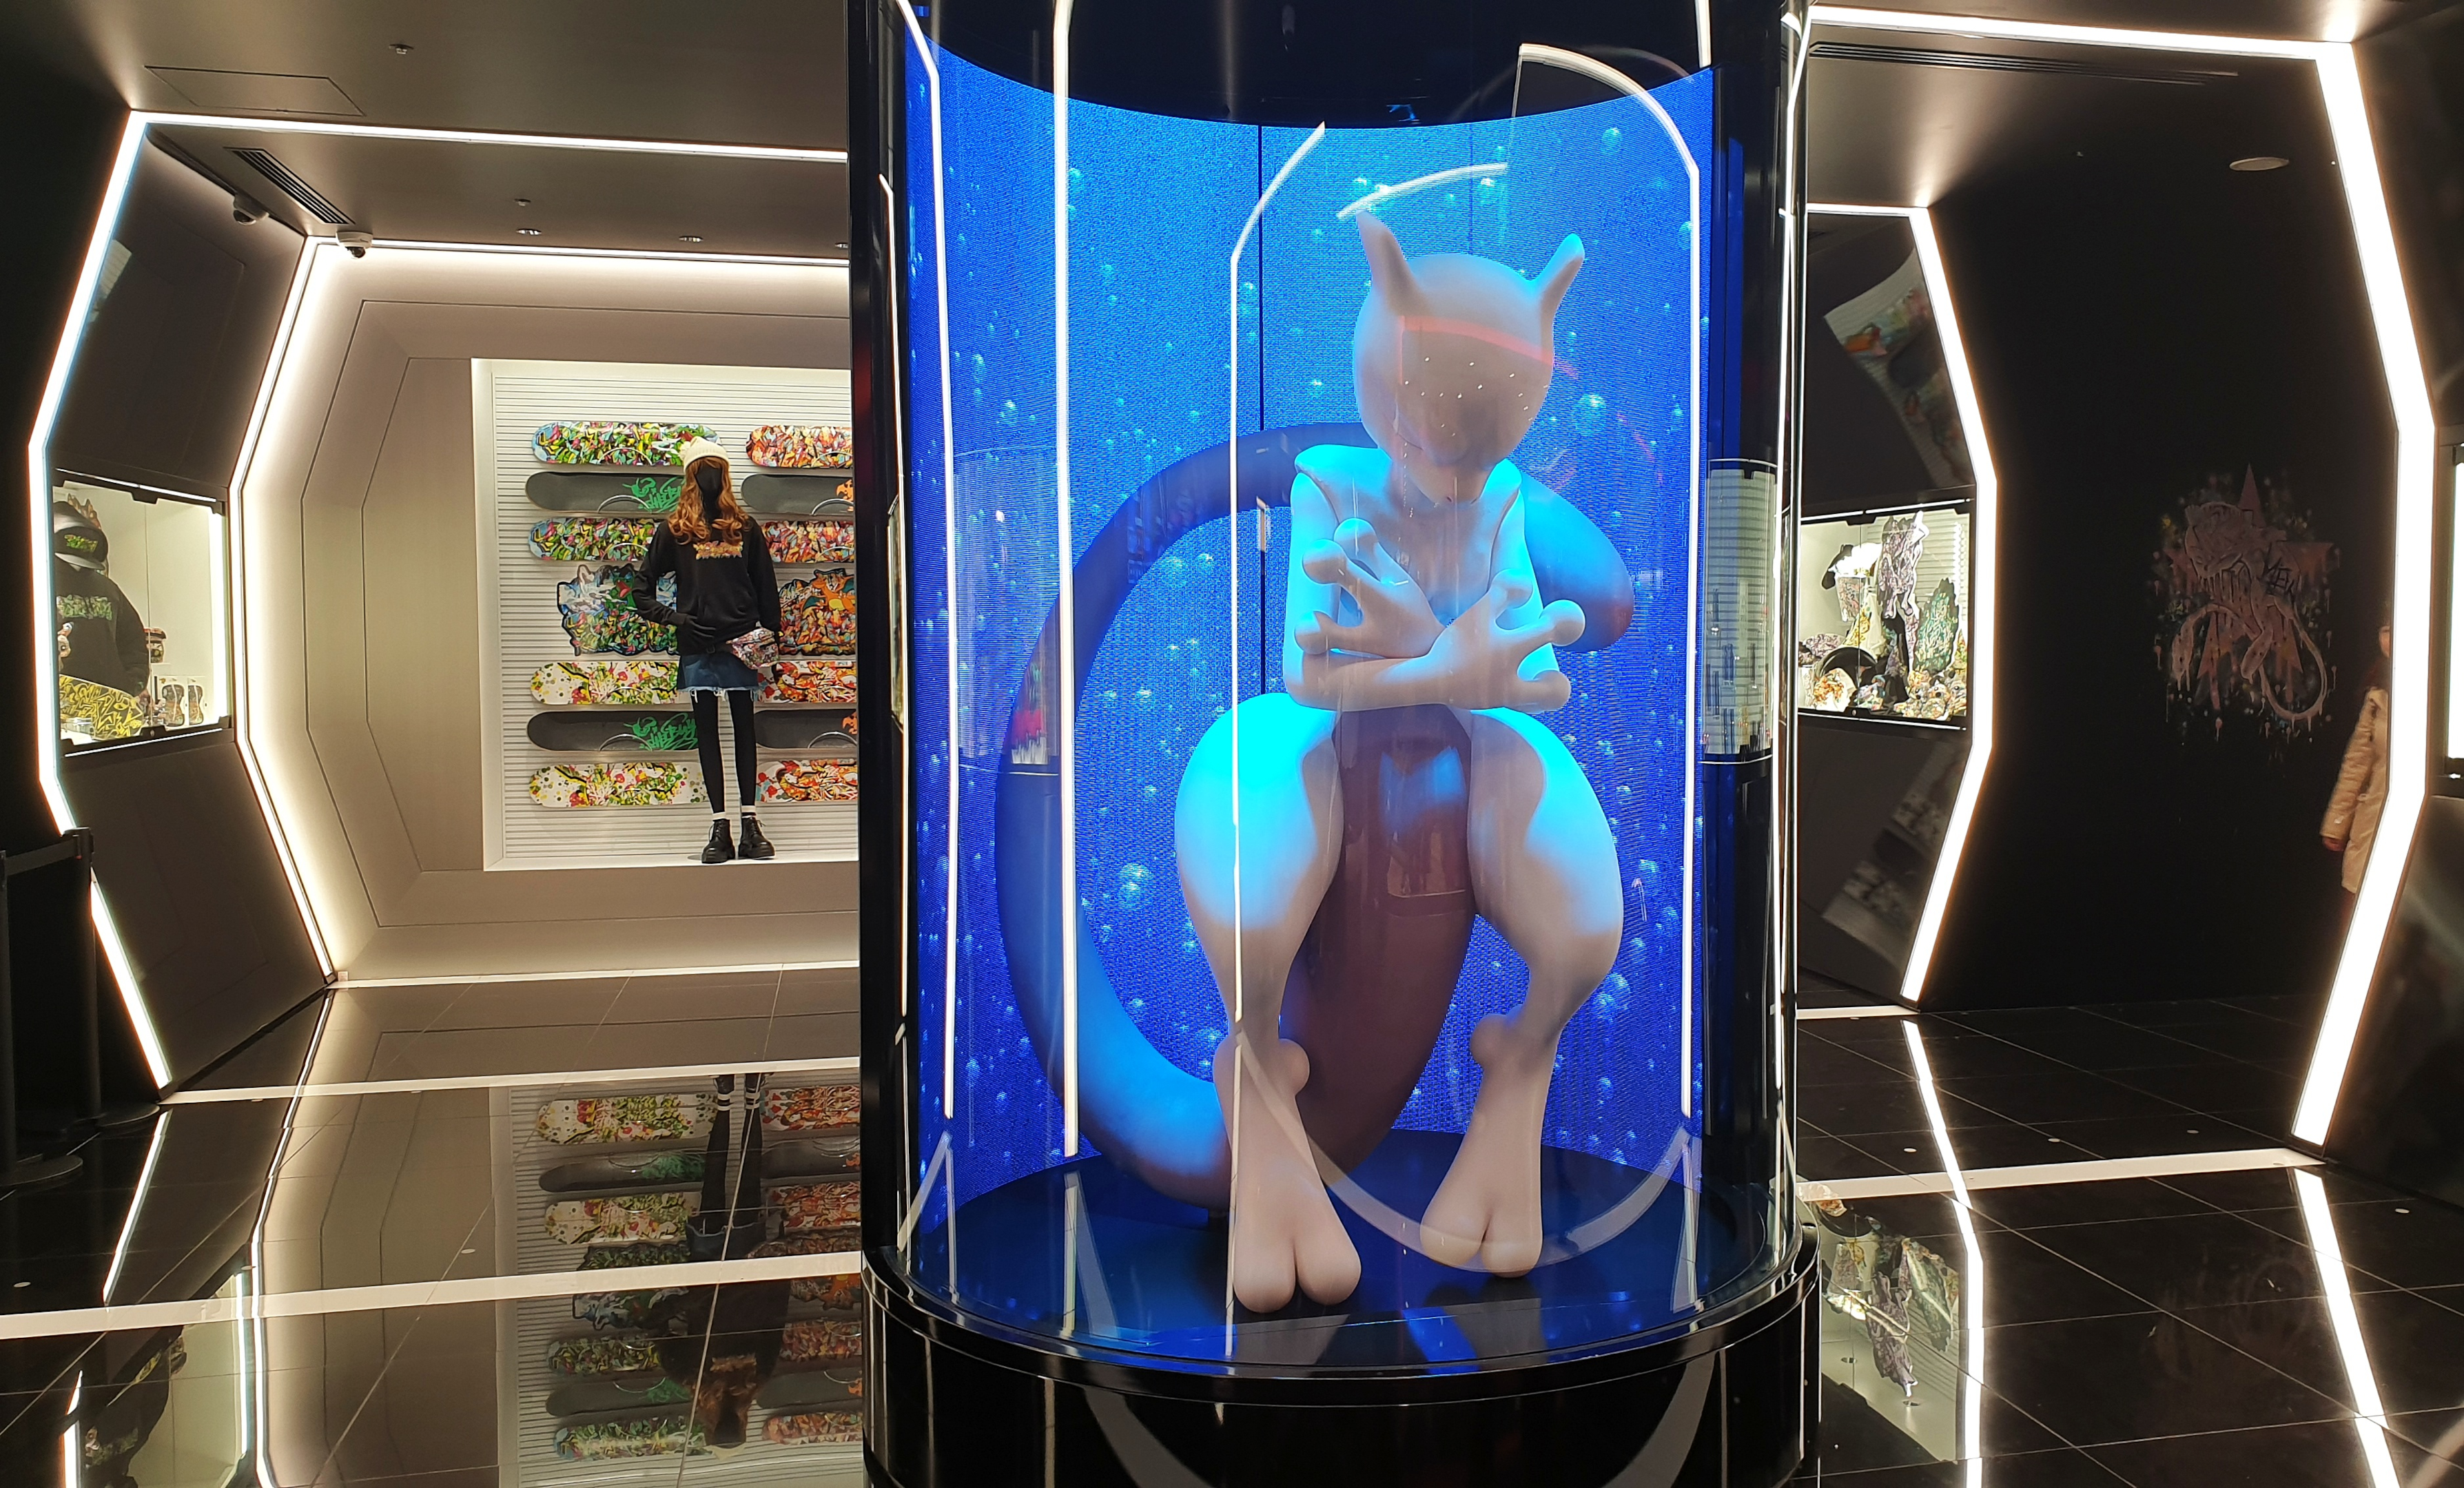 Pokémon Center Shibuya featuring Mewtwo